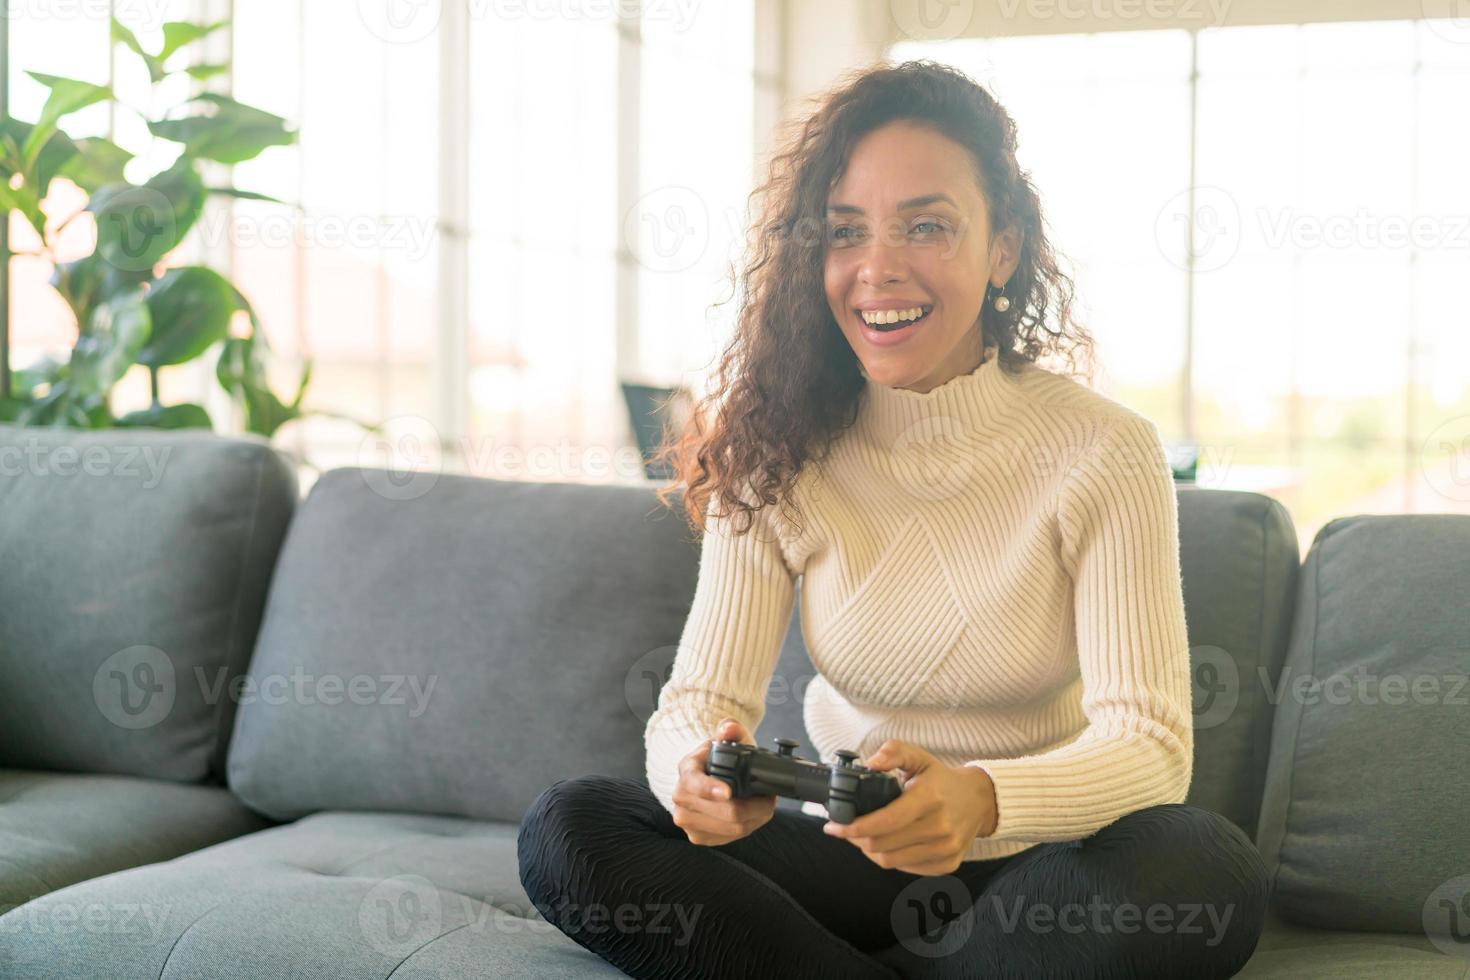 donna latina che gioca ai videogiochi con le mani che tengono il joystick foto